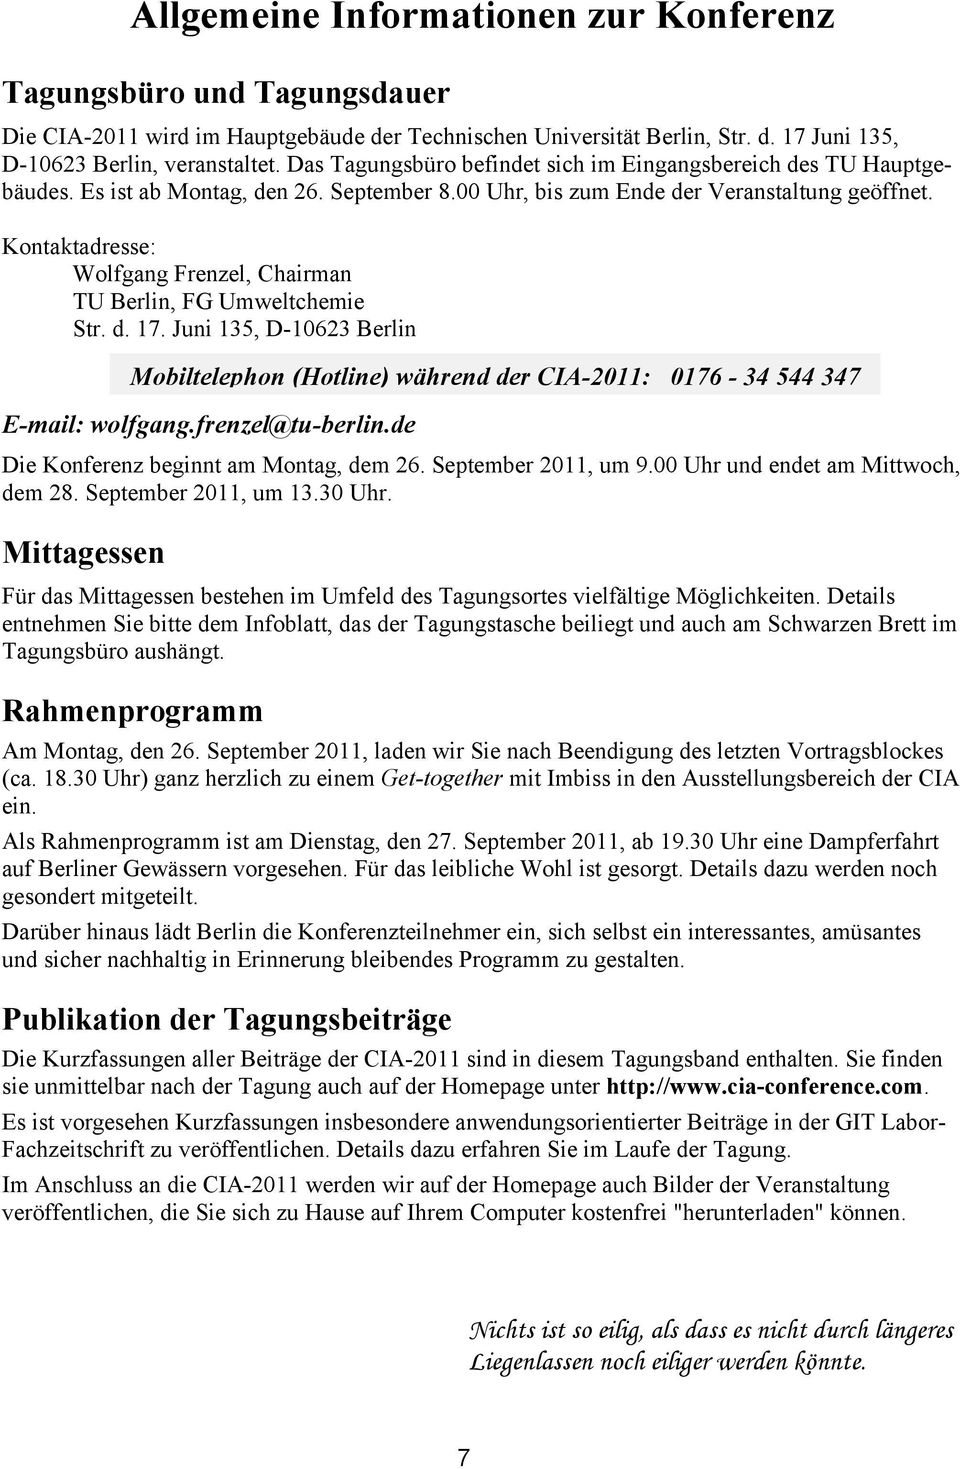 Kontaktadresse: Wolfgang Frenzel, Chairman TU Berlin, FG Umweltchemie Str. d. 17. Juni 135, D-10623 Berlin E-mail: wolfgang.frenzel@tu-berlin.de Die Konferenz beginnt am Montag, dem 26.